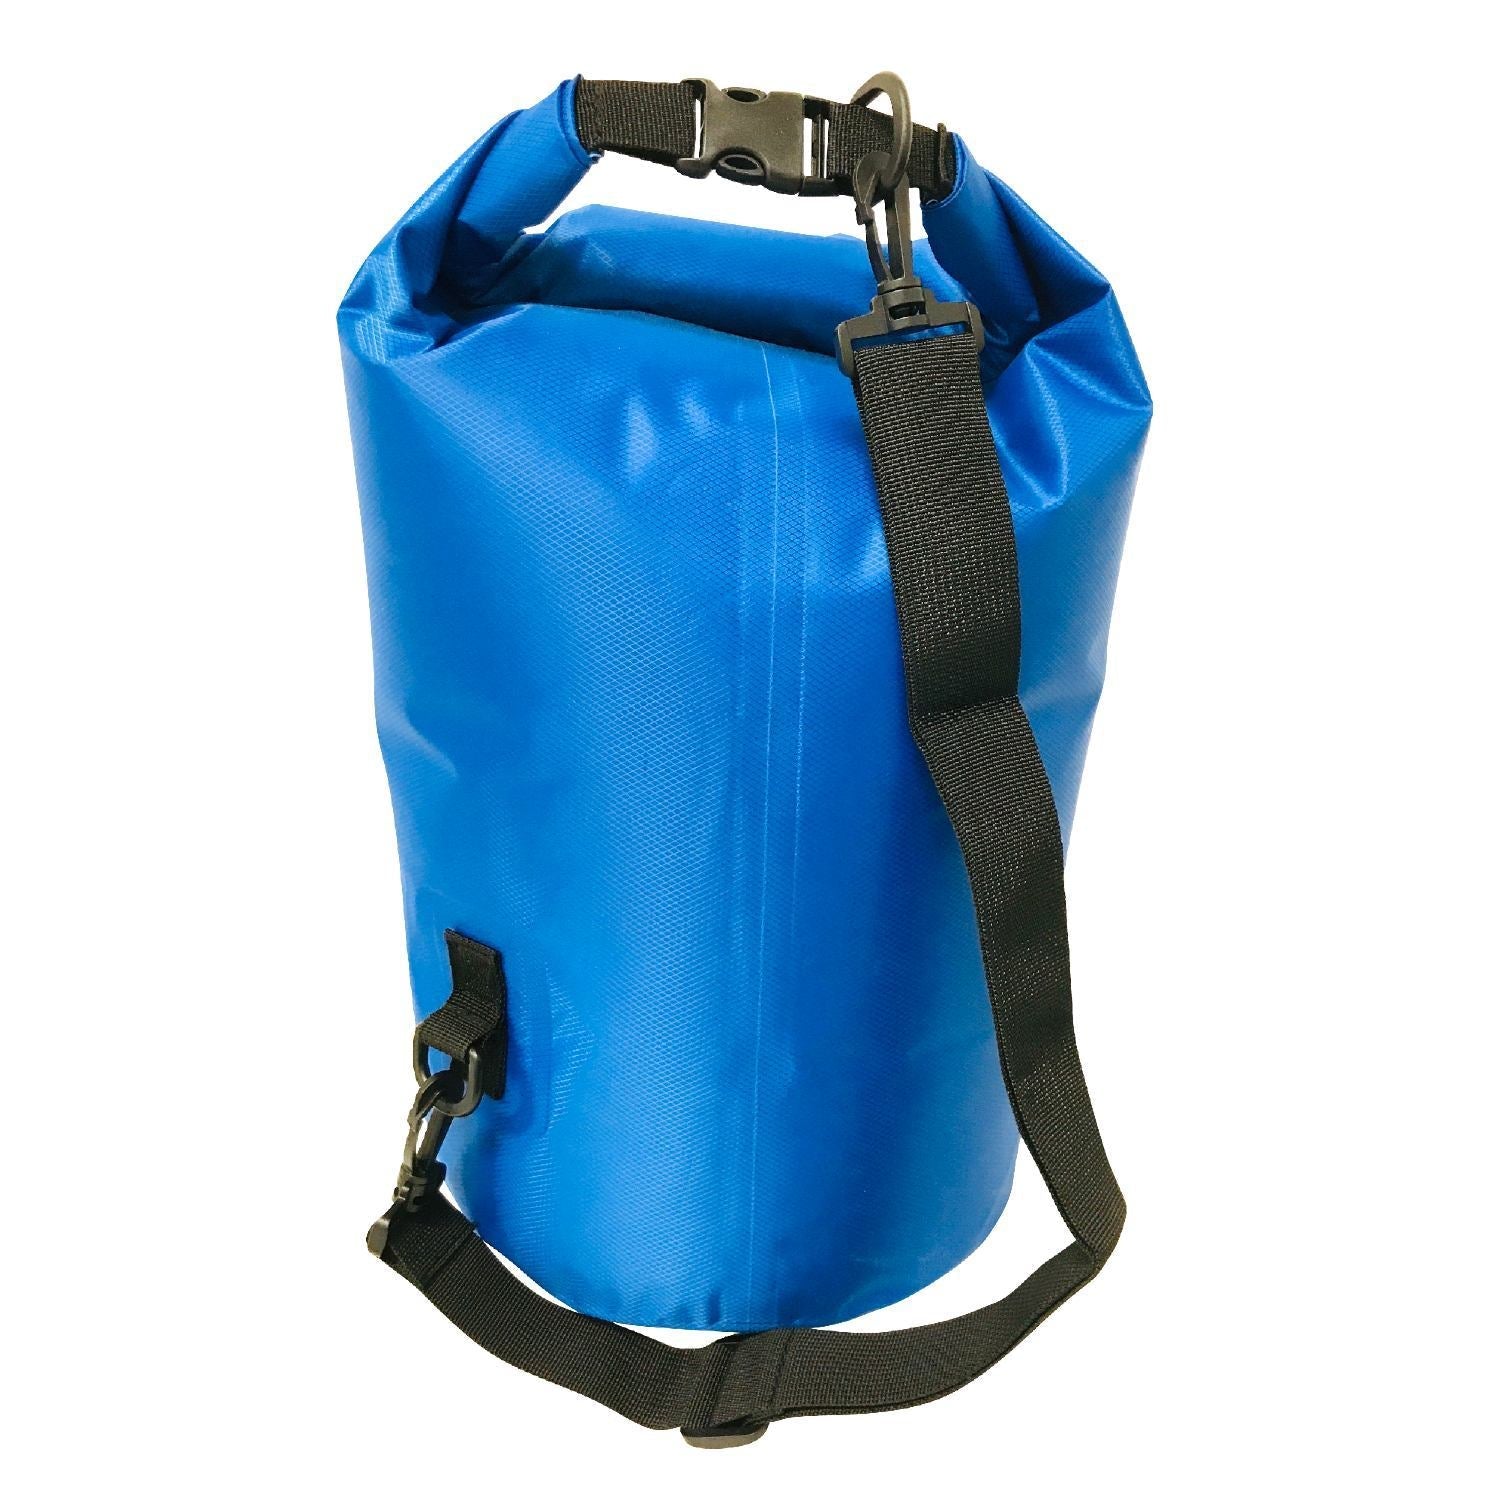 Outlife Waterproof Dry Bag 8 Liters